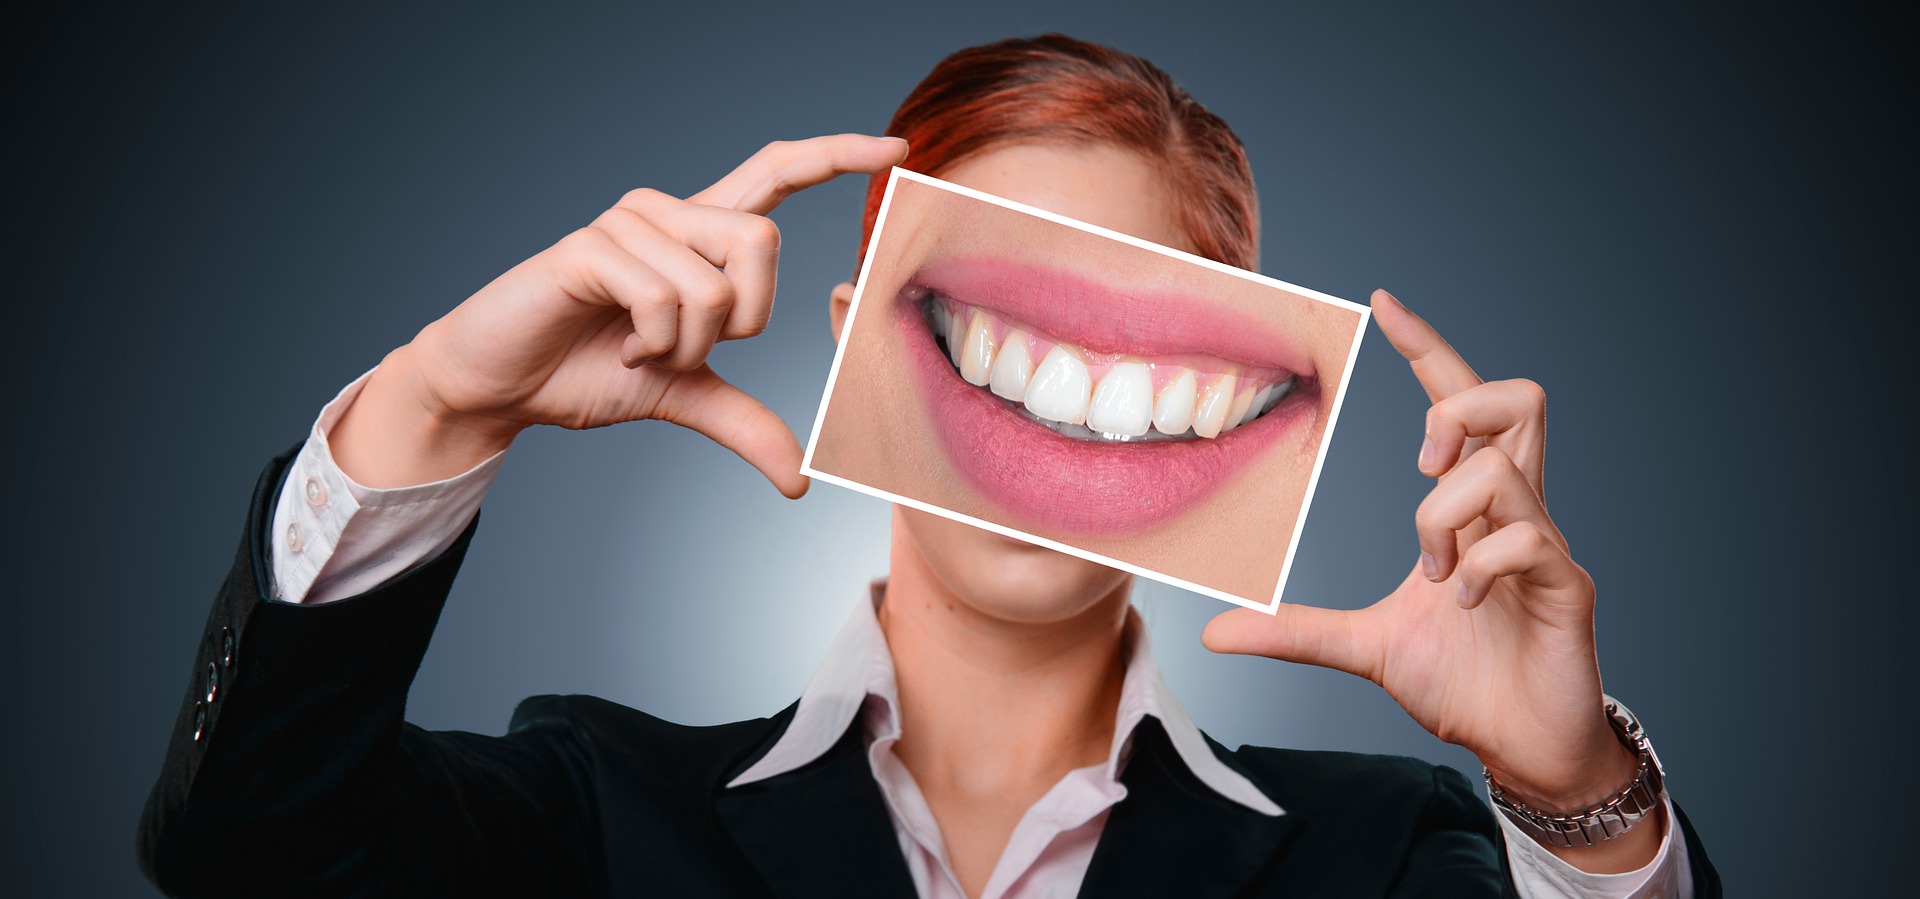 El mantenimiento periodontal y su importancia